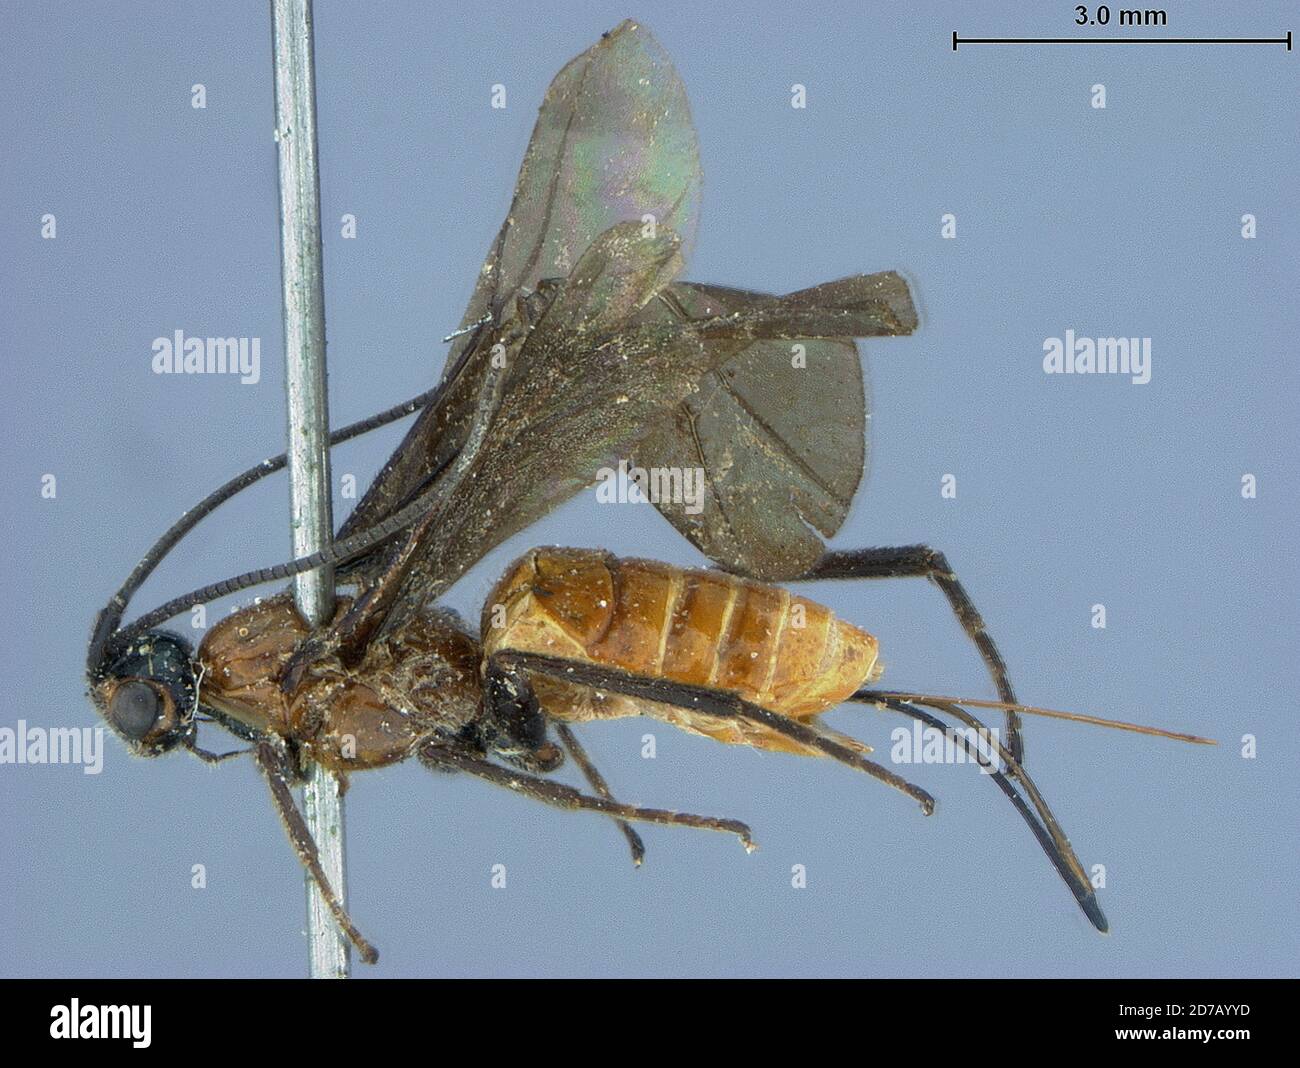 Montana, United States, Bracon montanensis Ashmead, Animalia, Arthropoda, Insecta, Hymenoptera, Braconidae Stock Photo